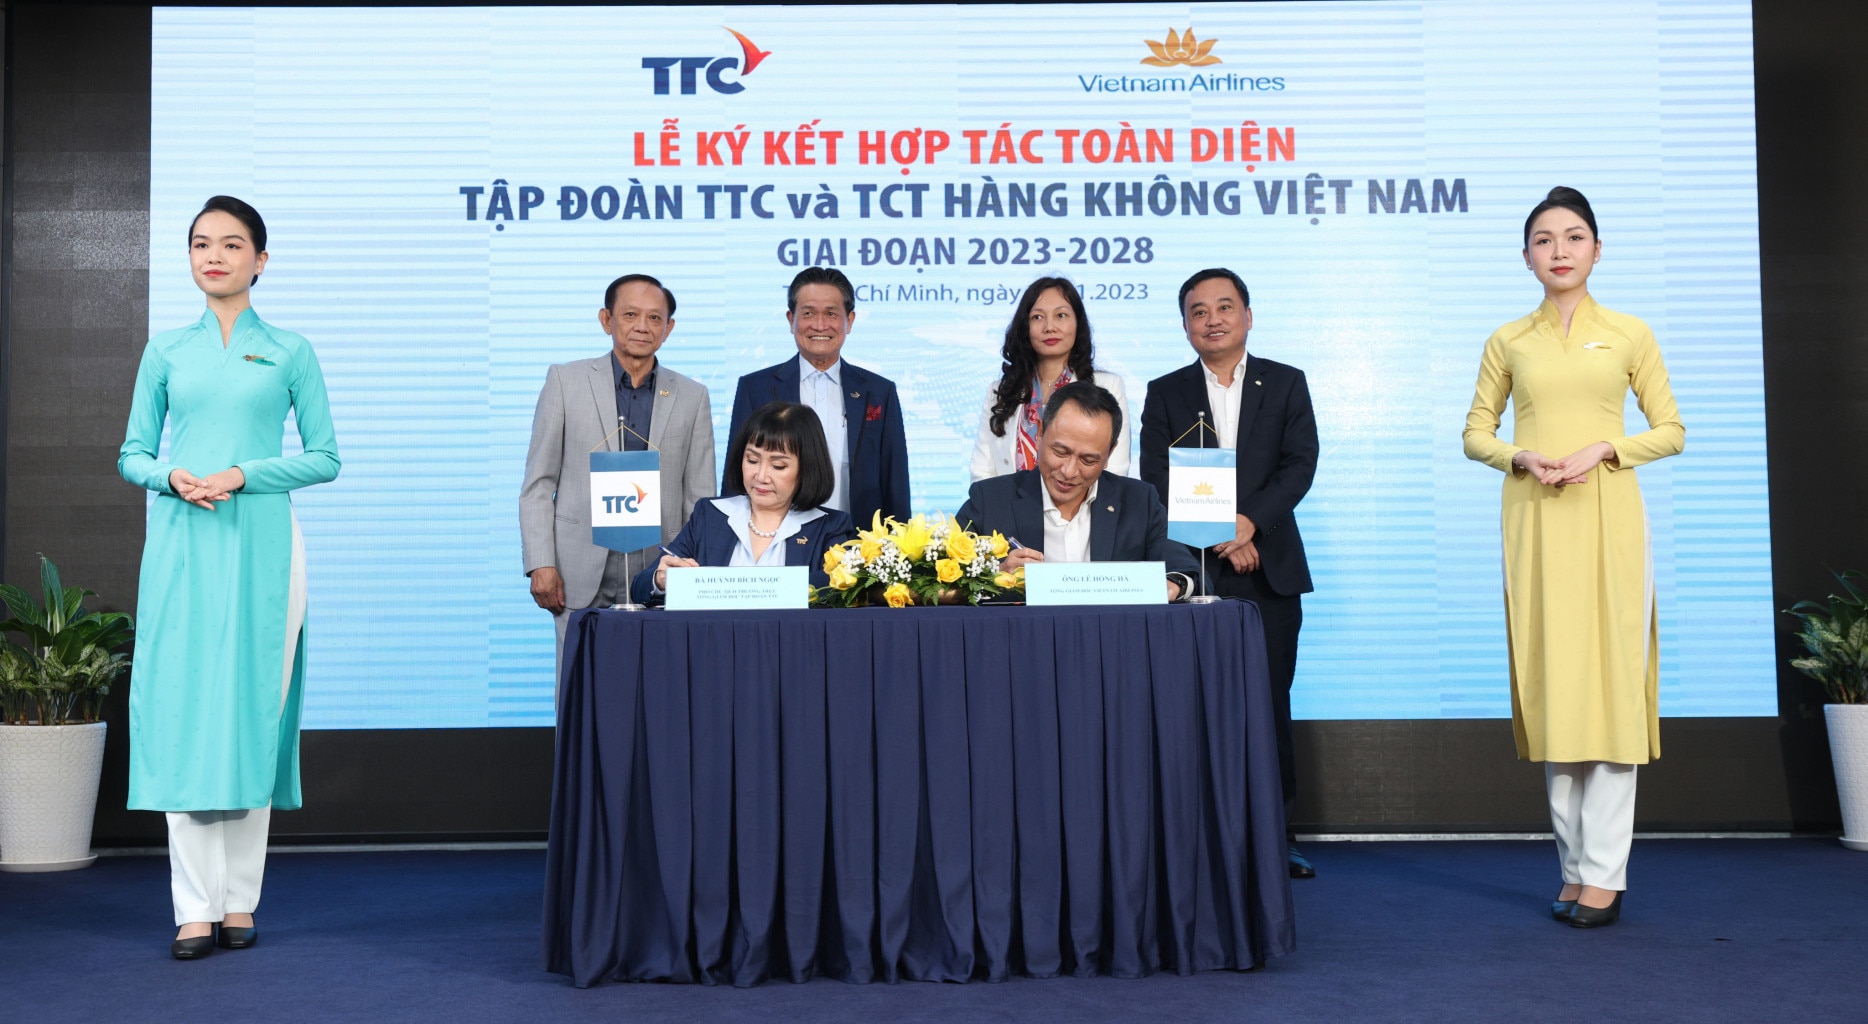 Sự kiện - Vietnam Airlines và Tập đoàn TTC ký kết hợp tác toàn diện